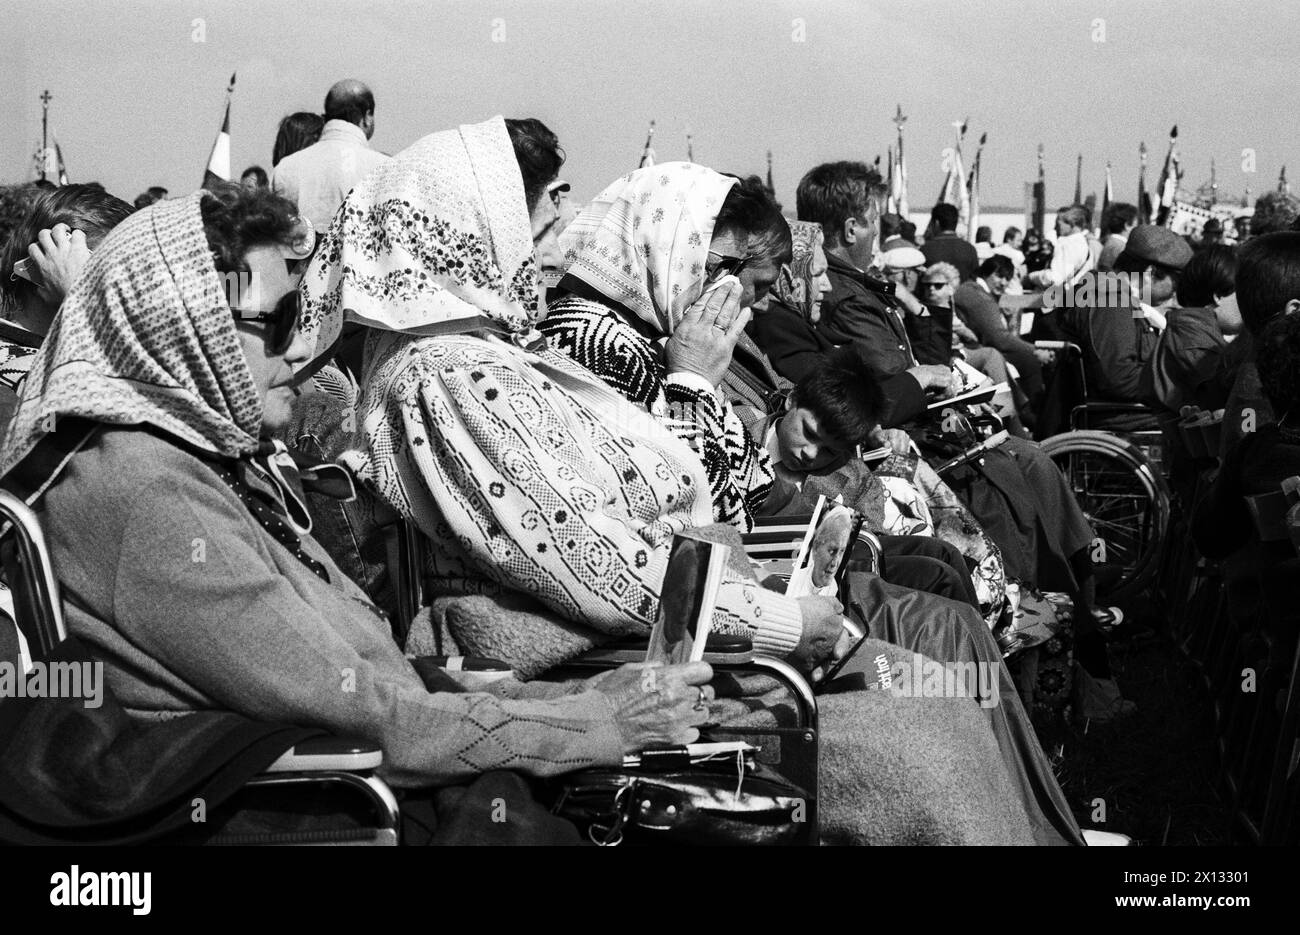 Das Foto wurde am 24. Juni 1988 anlässlich des Besuchs von Papst Johannes Paul in Österreich aufgenommen und zeigt einige der rund 75,000 Gläubigen, die an der eucharistiefeier in Trausdorf (Burgenland) in der Nähe der ungarischen Grenze teilnehmen. Im Vordergrund: Ältere Damen im Rollstuhl. - 19880624 PD0027 - Rechteinfo: Rechte verwaltet (RM) Stockfoto